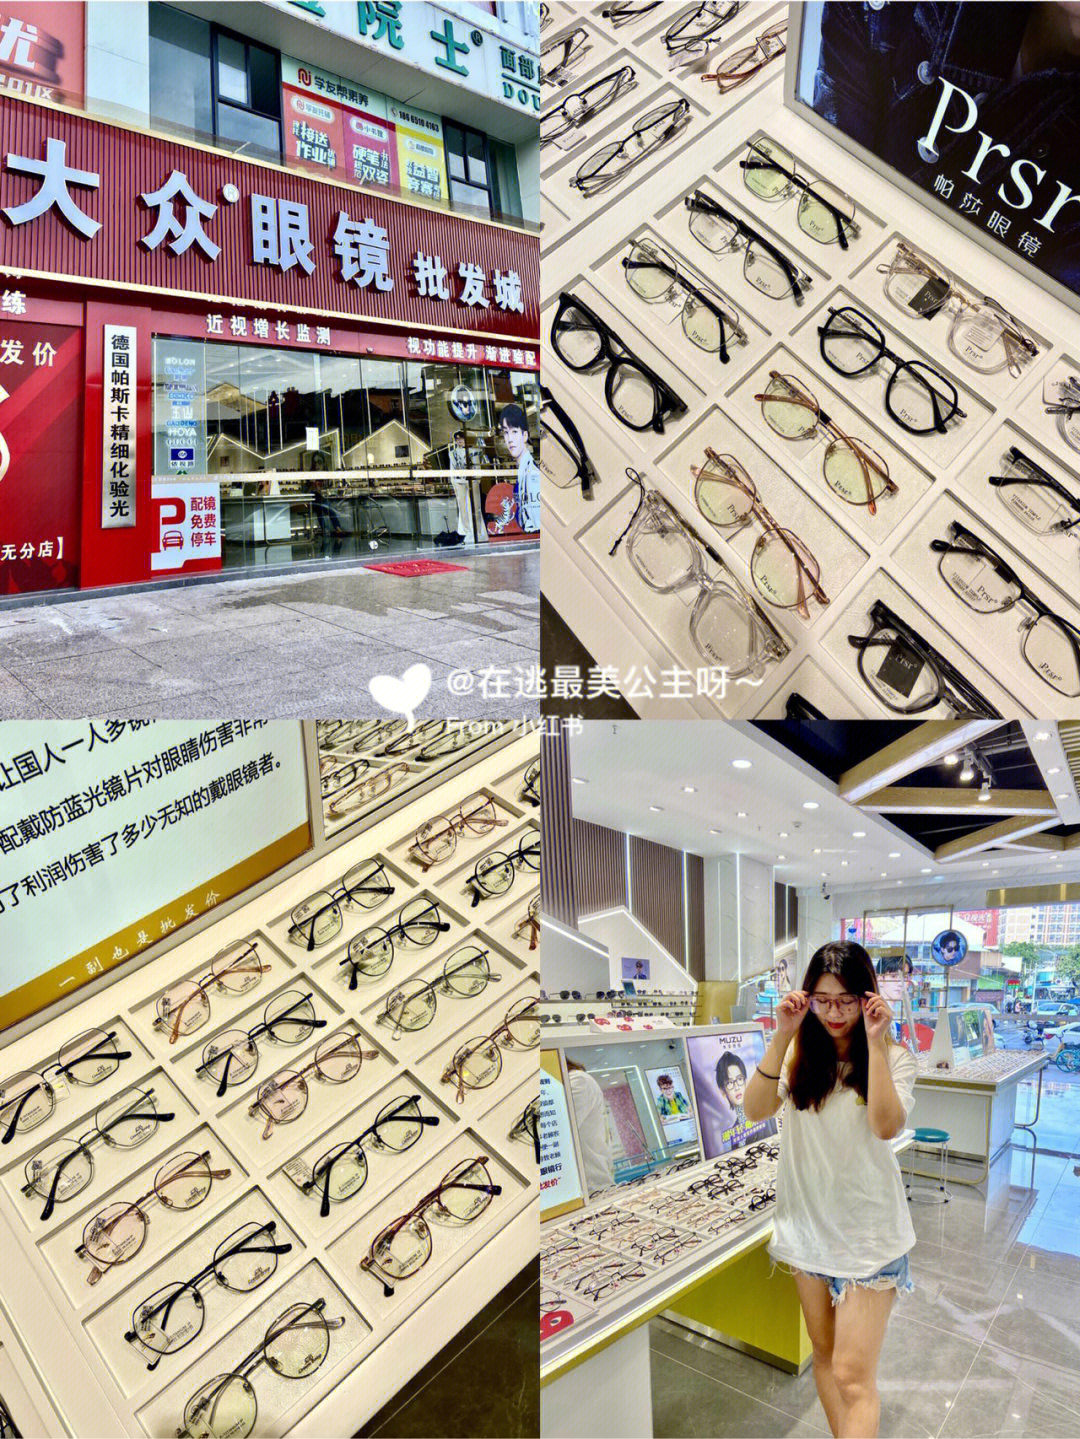 东莞探店一副也是批发价的大众眼镜批发城